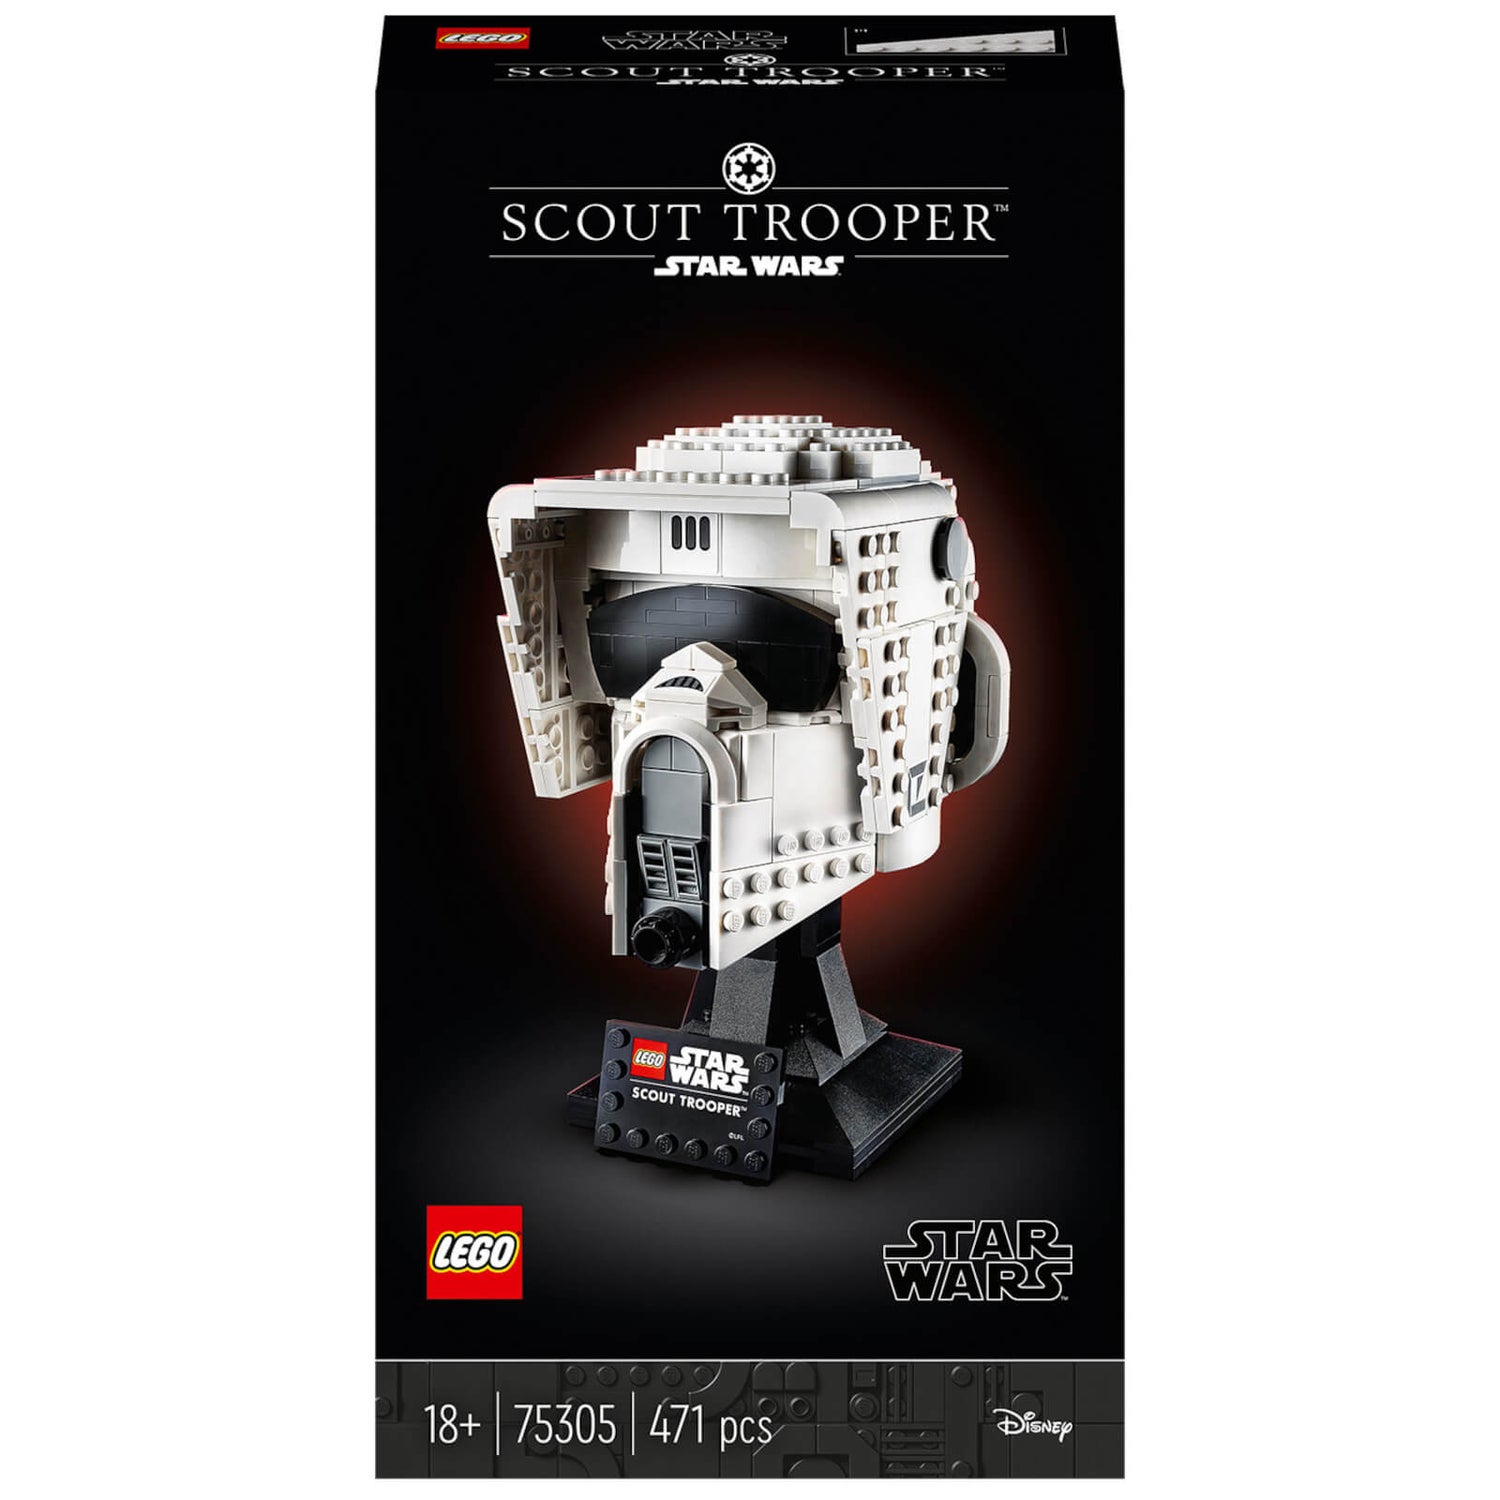 LEGO Star Wars : Le casque du Scout Trooper pour adultes (75305)